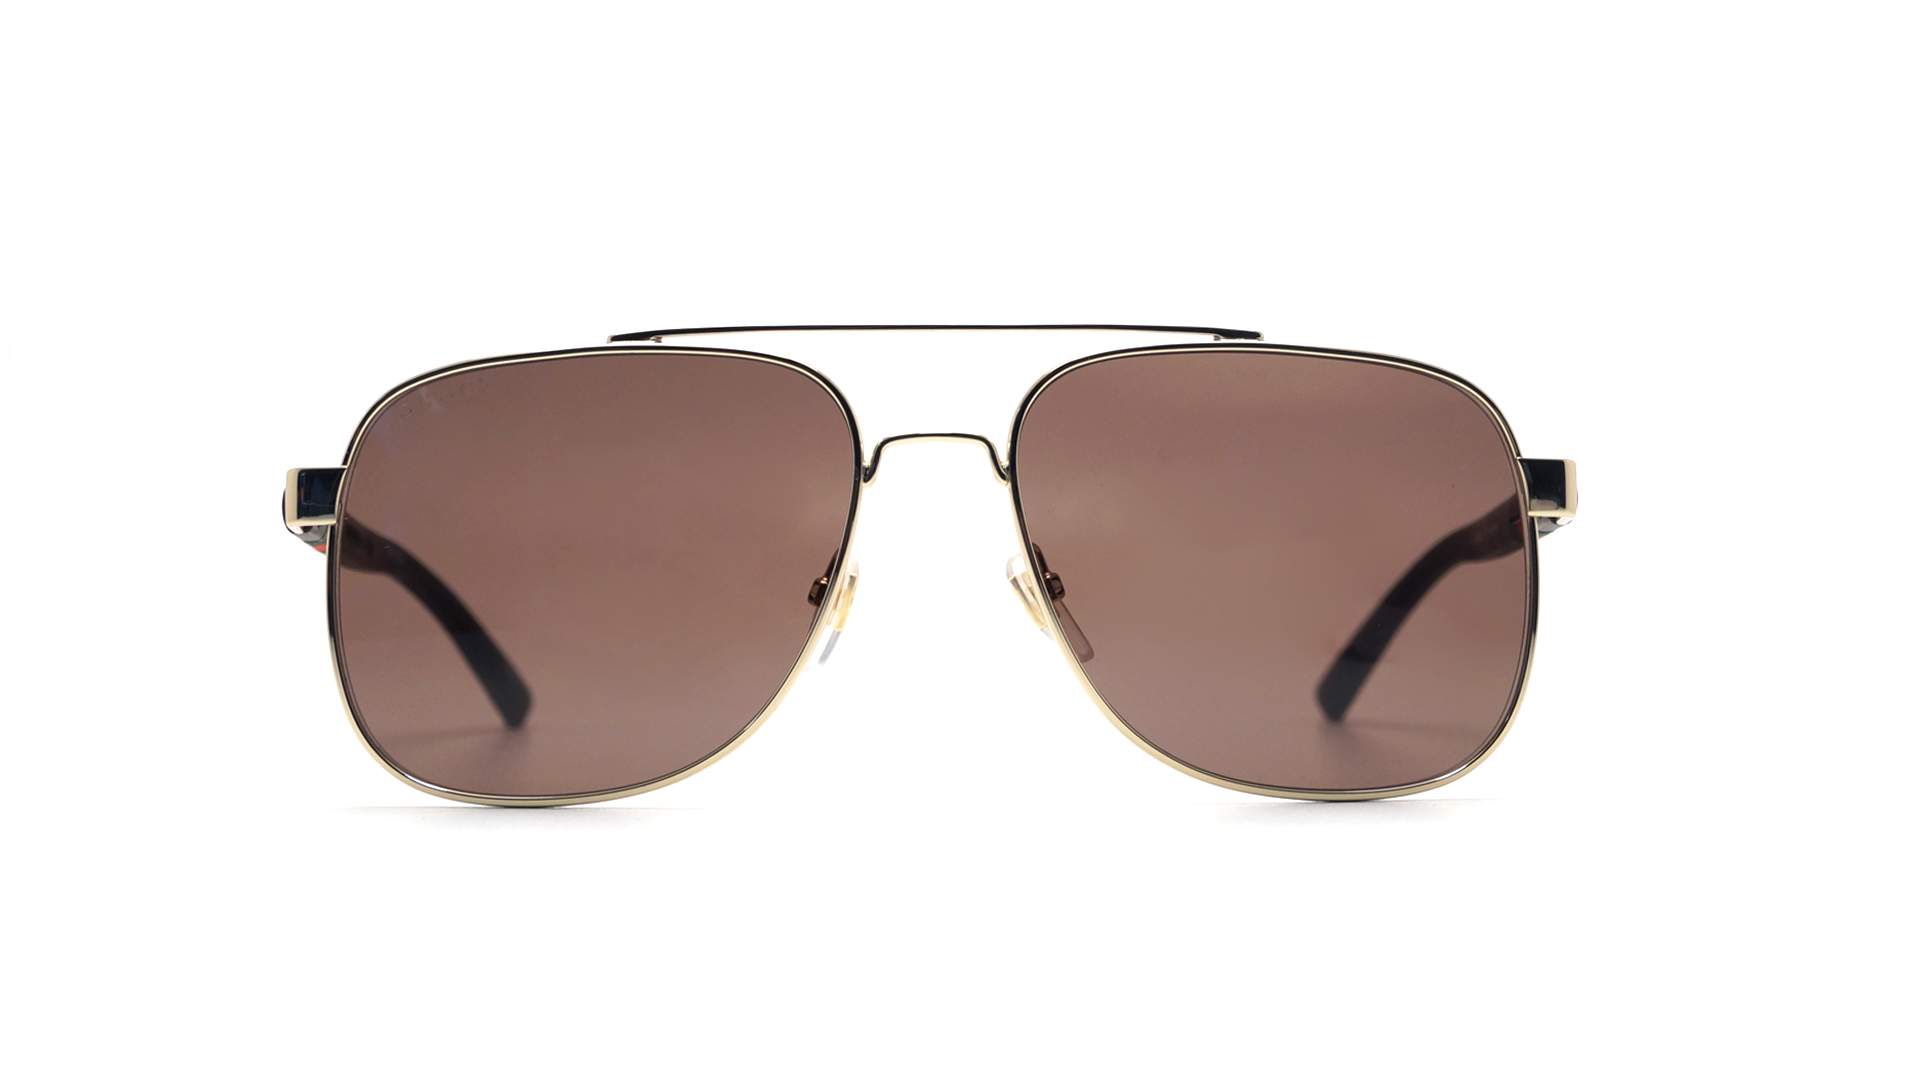 Sunglasses Gucci GG0422S 003 60-17 Gold in stock | Price 141,63 ...